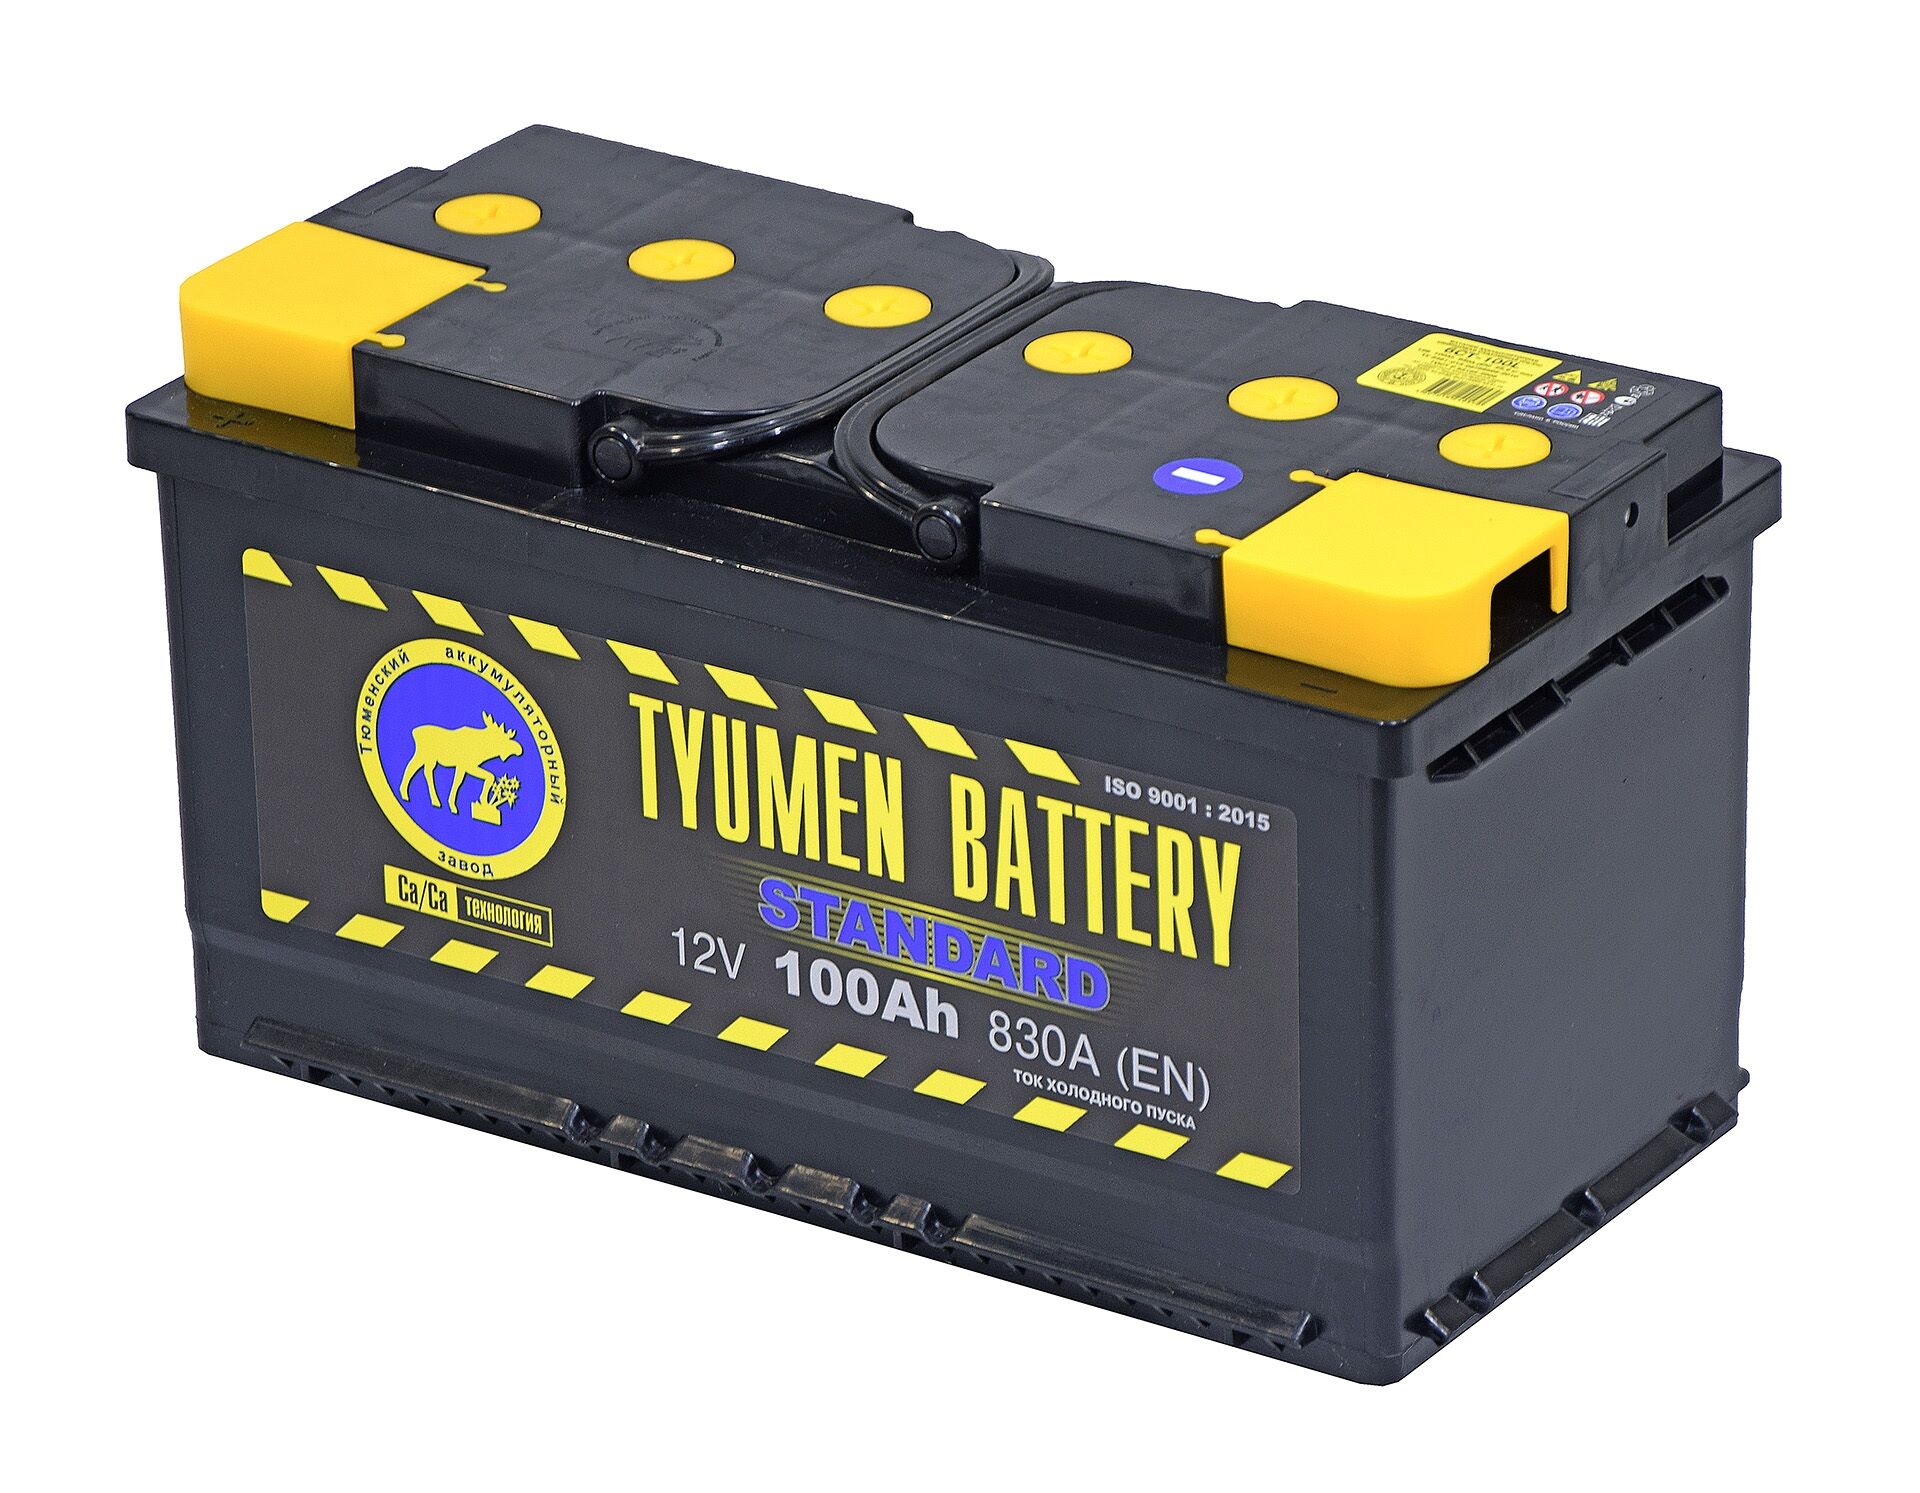 Тюмень АКБ 100ач. Tyumen Battery Standard 190 Ач. Tyumen Battery Standard 100а/ч. Аккумулятор Tyumen Battery Standart 190а/ч. Аккумуляторы тюмень сайт